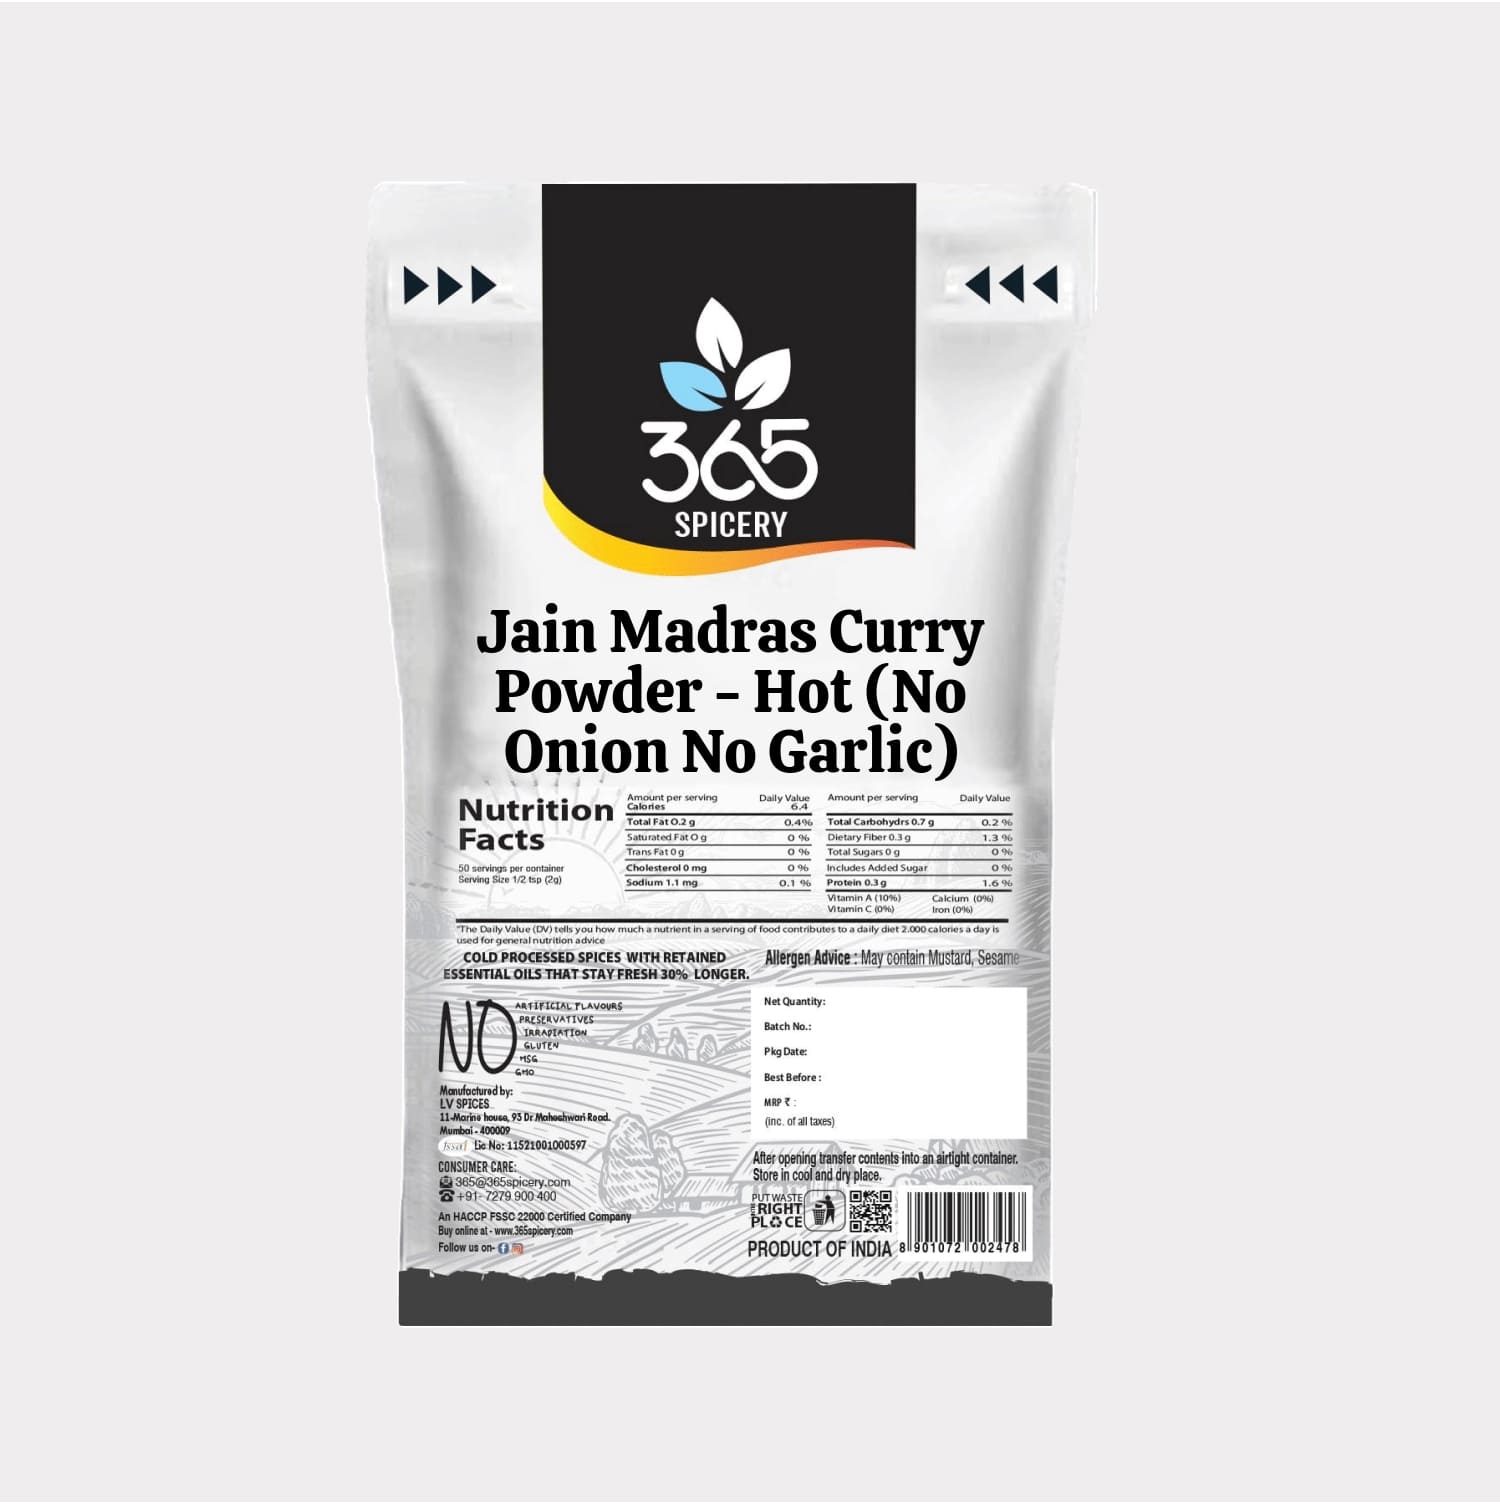 Jain Madras Curry Powder - Hot (No Onion No Garlic)